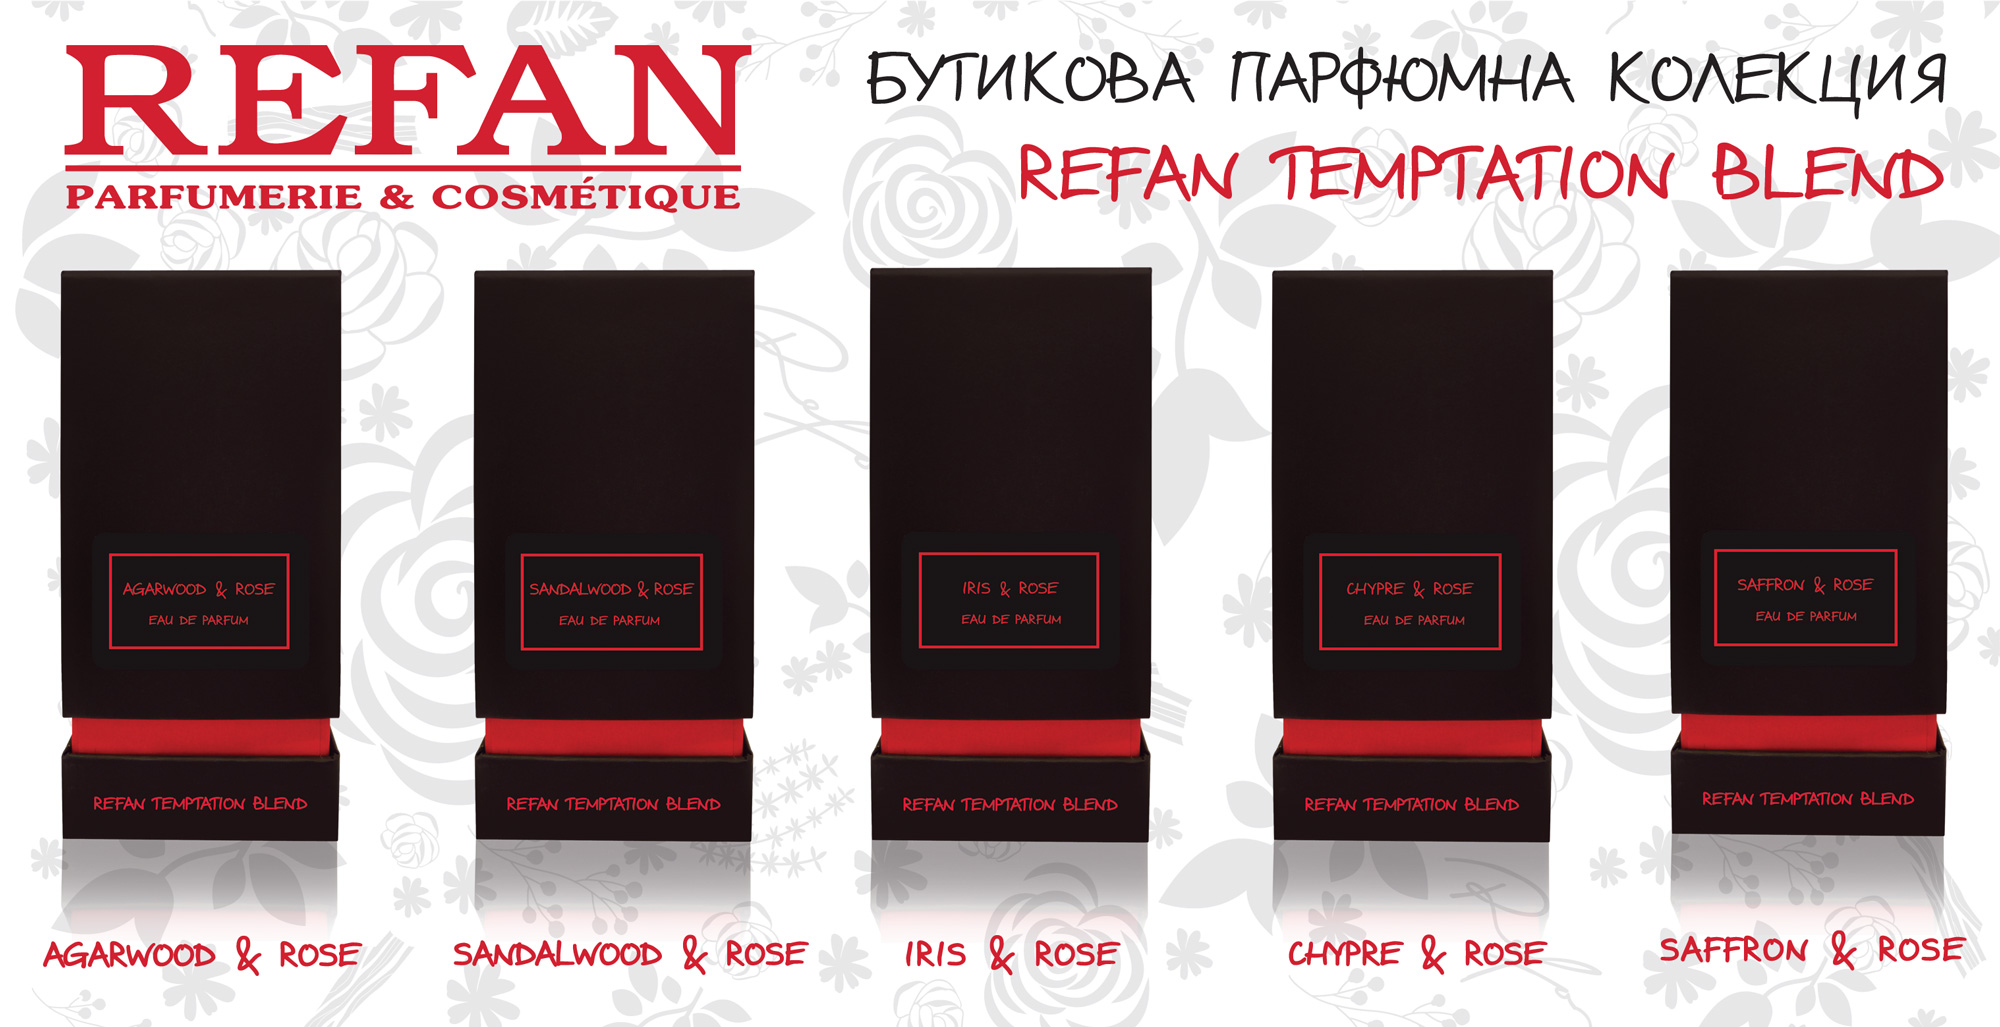 Бутикова парфюмна колекция REFAN TEMPTATION BLEND – авангардни аромати за ценители